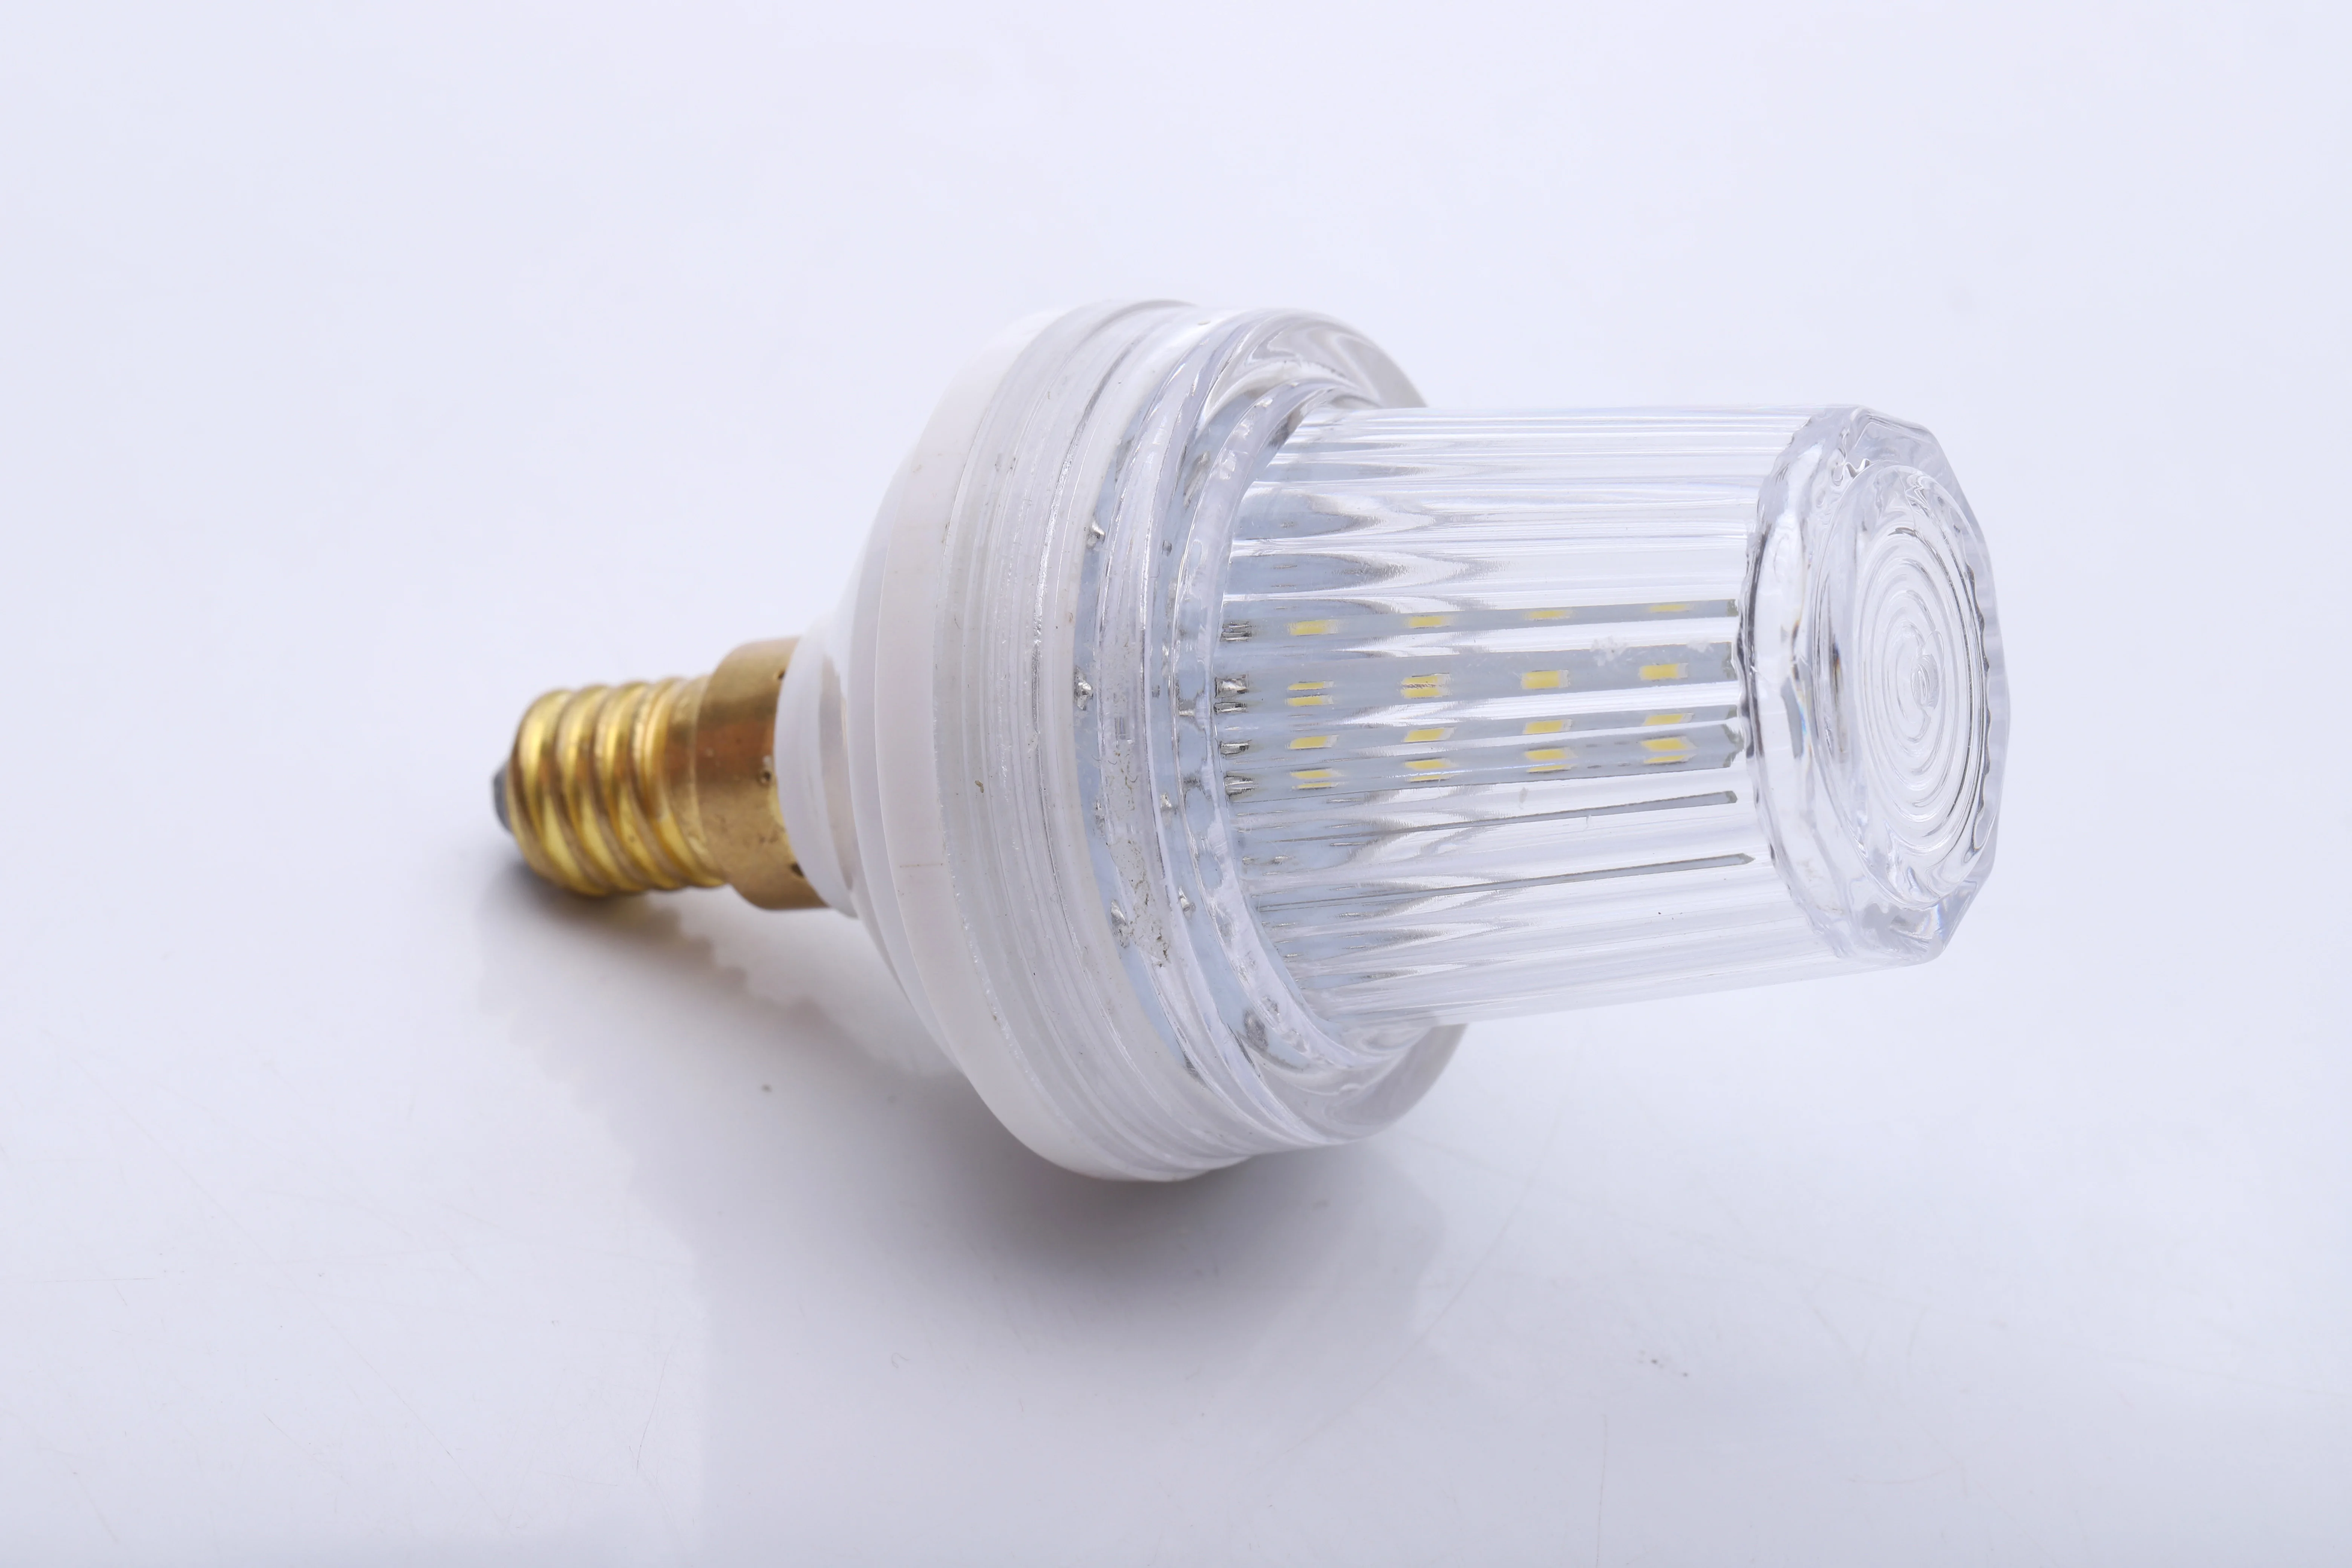 Outdoor waterproof plastic housing lamps E27 B22 E14 base strobe Led flashing light bulbs